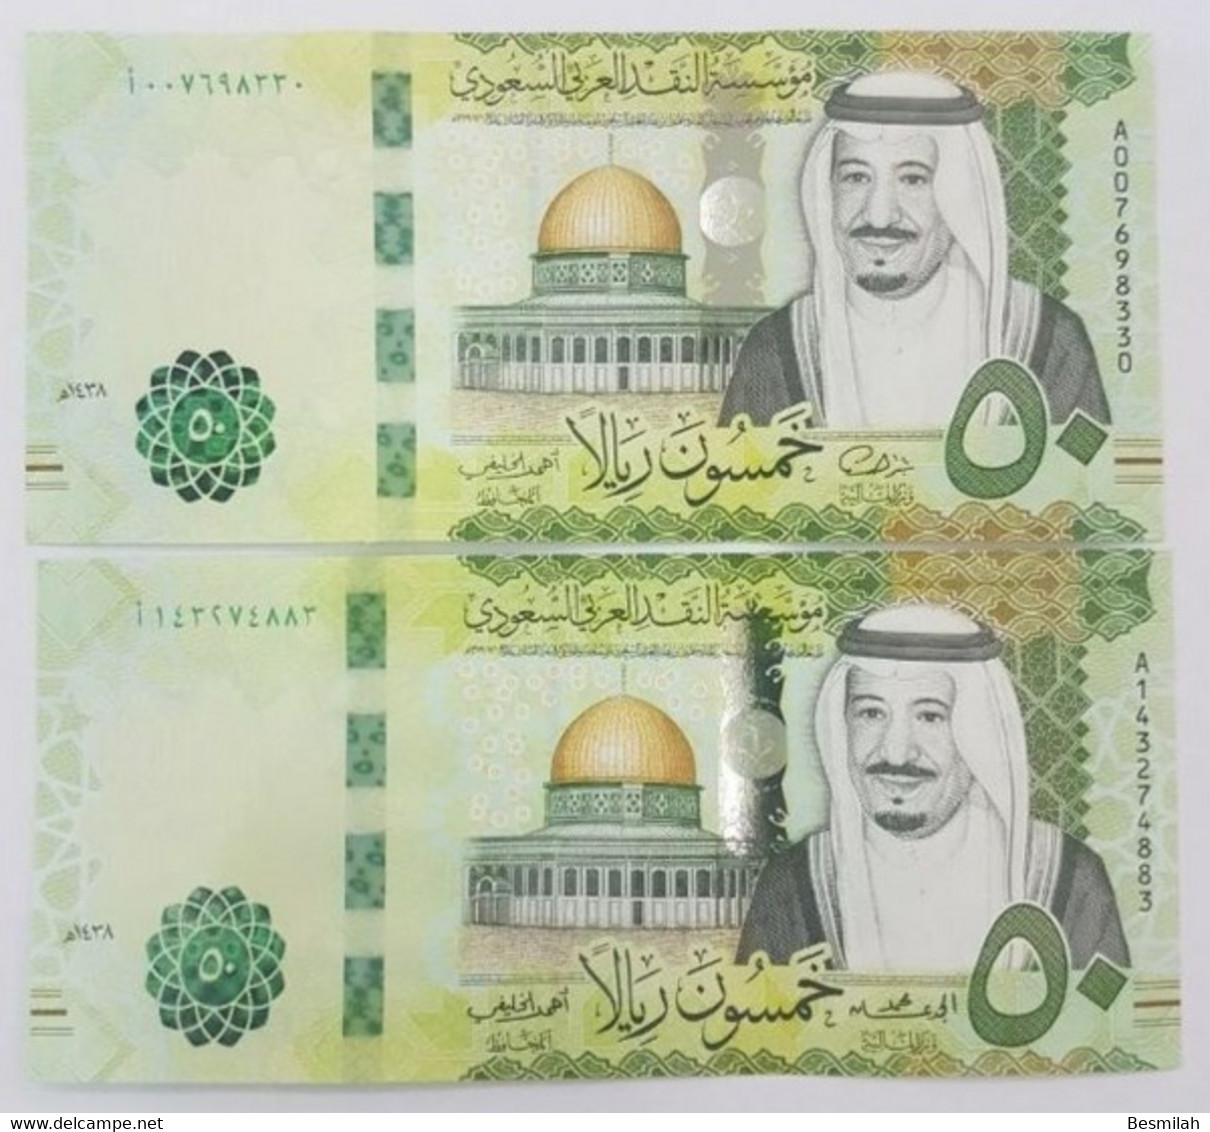 Saudi Arabia 50 Riyals 2016, 2017, 2021 P-40 A , B , C UNC Three Notes From A Bundle One Of Each Date 150 Riyals - Arabia Saudita